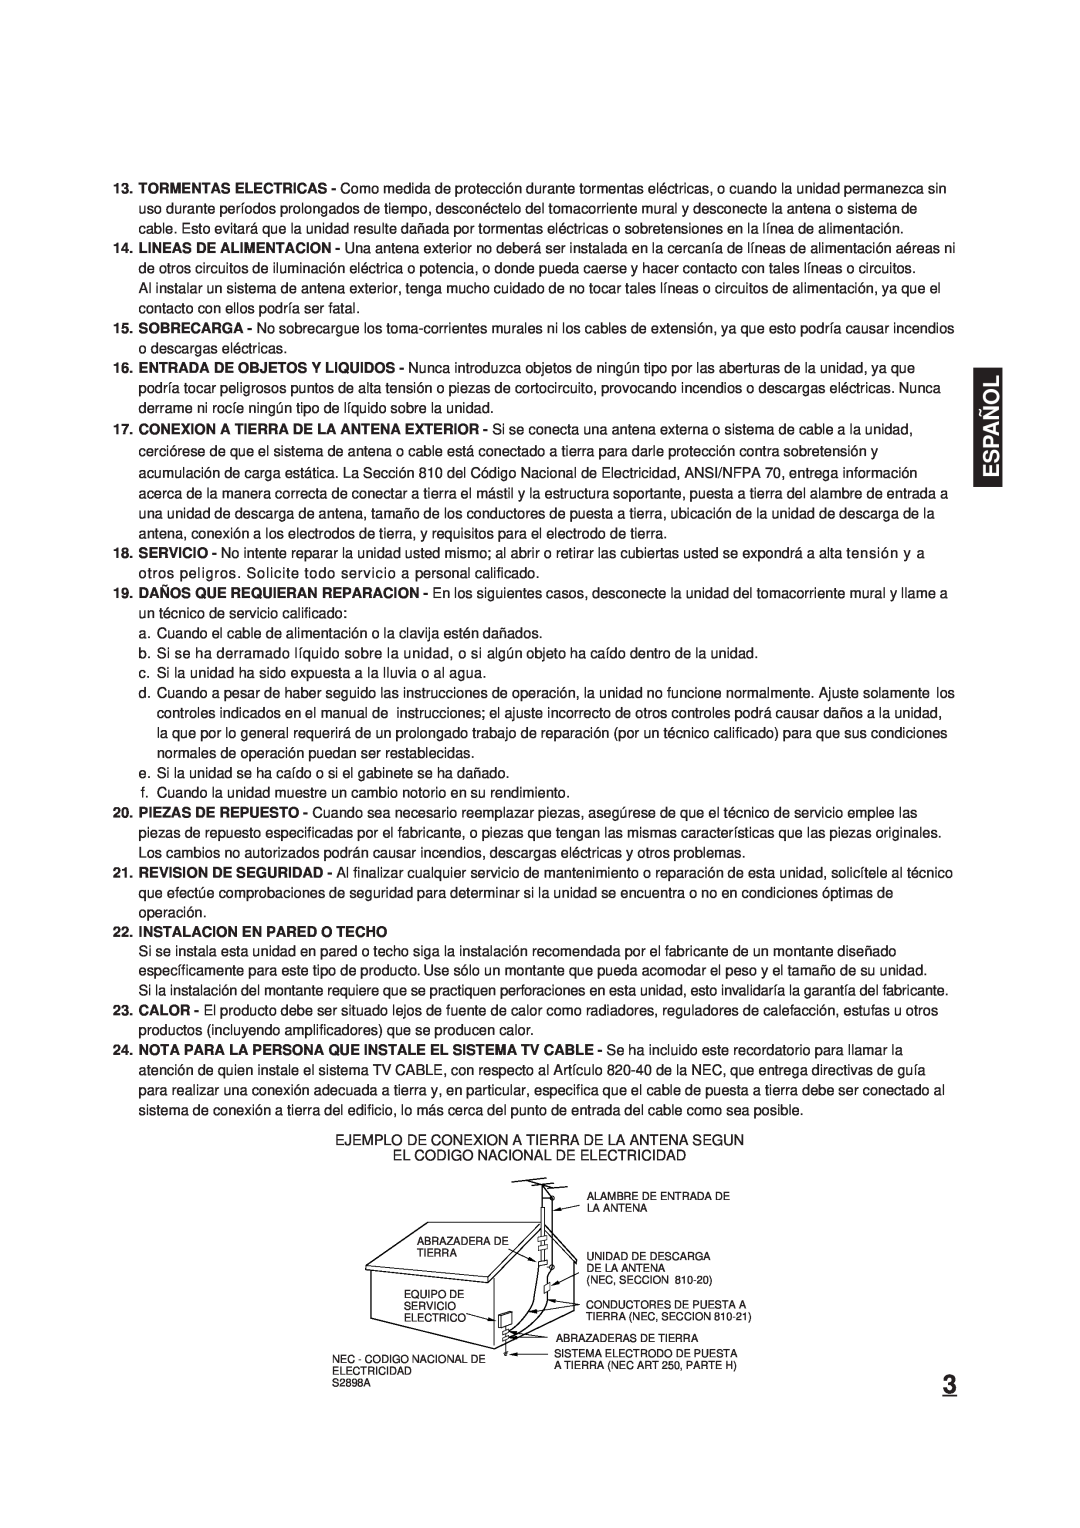 Memorex DT1900-C manual Españ Ol, Instalacion En Pared O Techo 